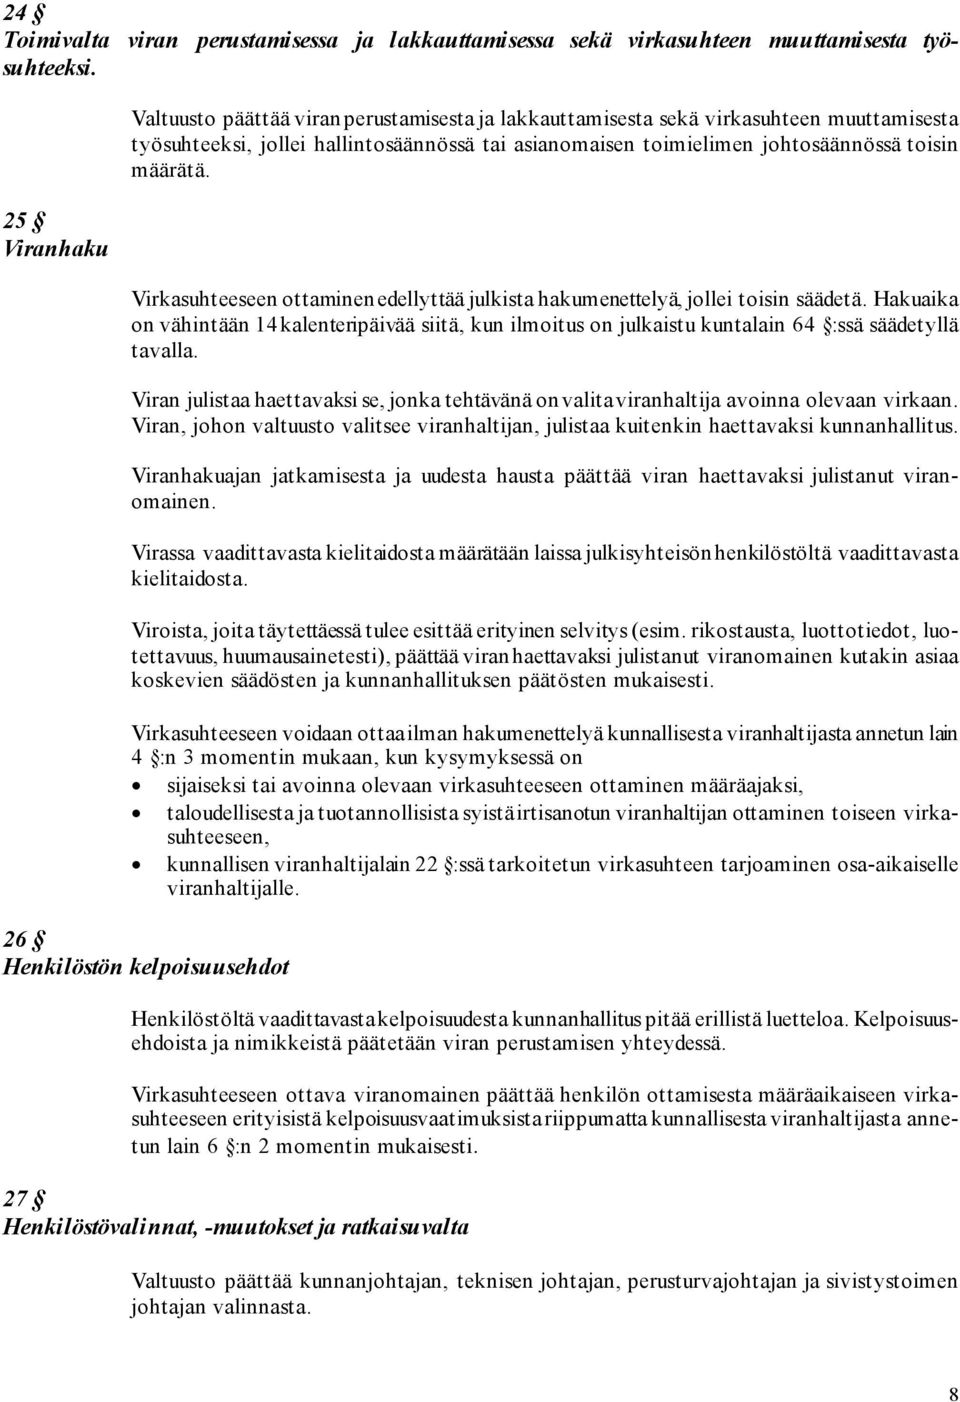 25 Viranhaku Virkasuhteeseen ottaminen edellyttää julkista hakumenettelyä, jollei toisin säädetä.